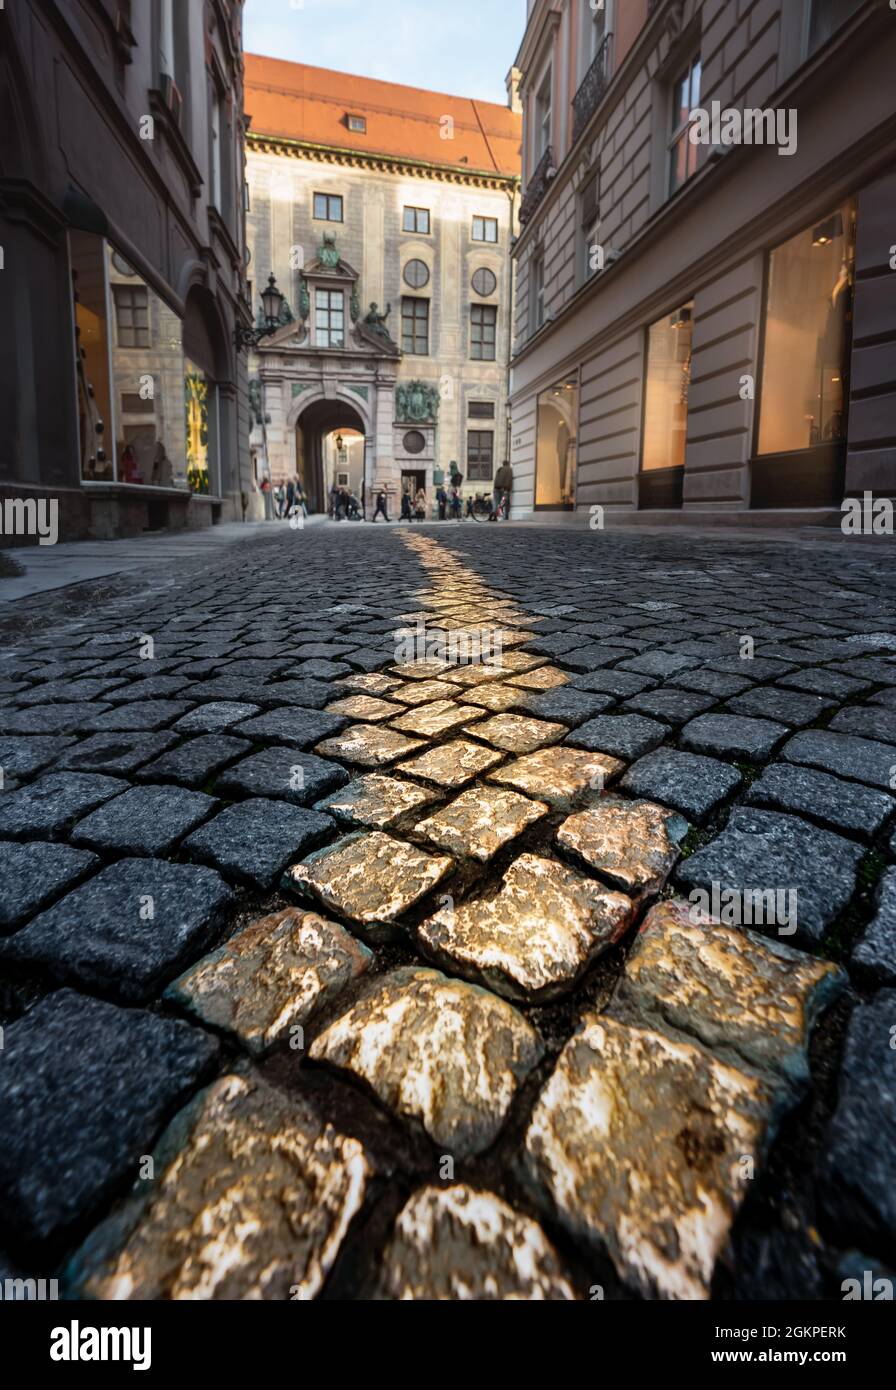 Les pavés d'or à Viscardigasse - les gens ont utilisé cette allée pour éviter de rendre hommage devant les soldats nazis - Munich, Bavière, Allemagne Banque D'Images